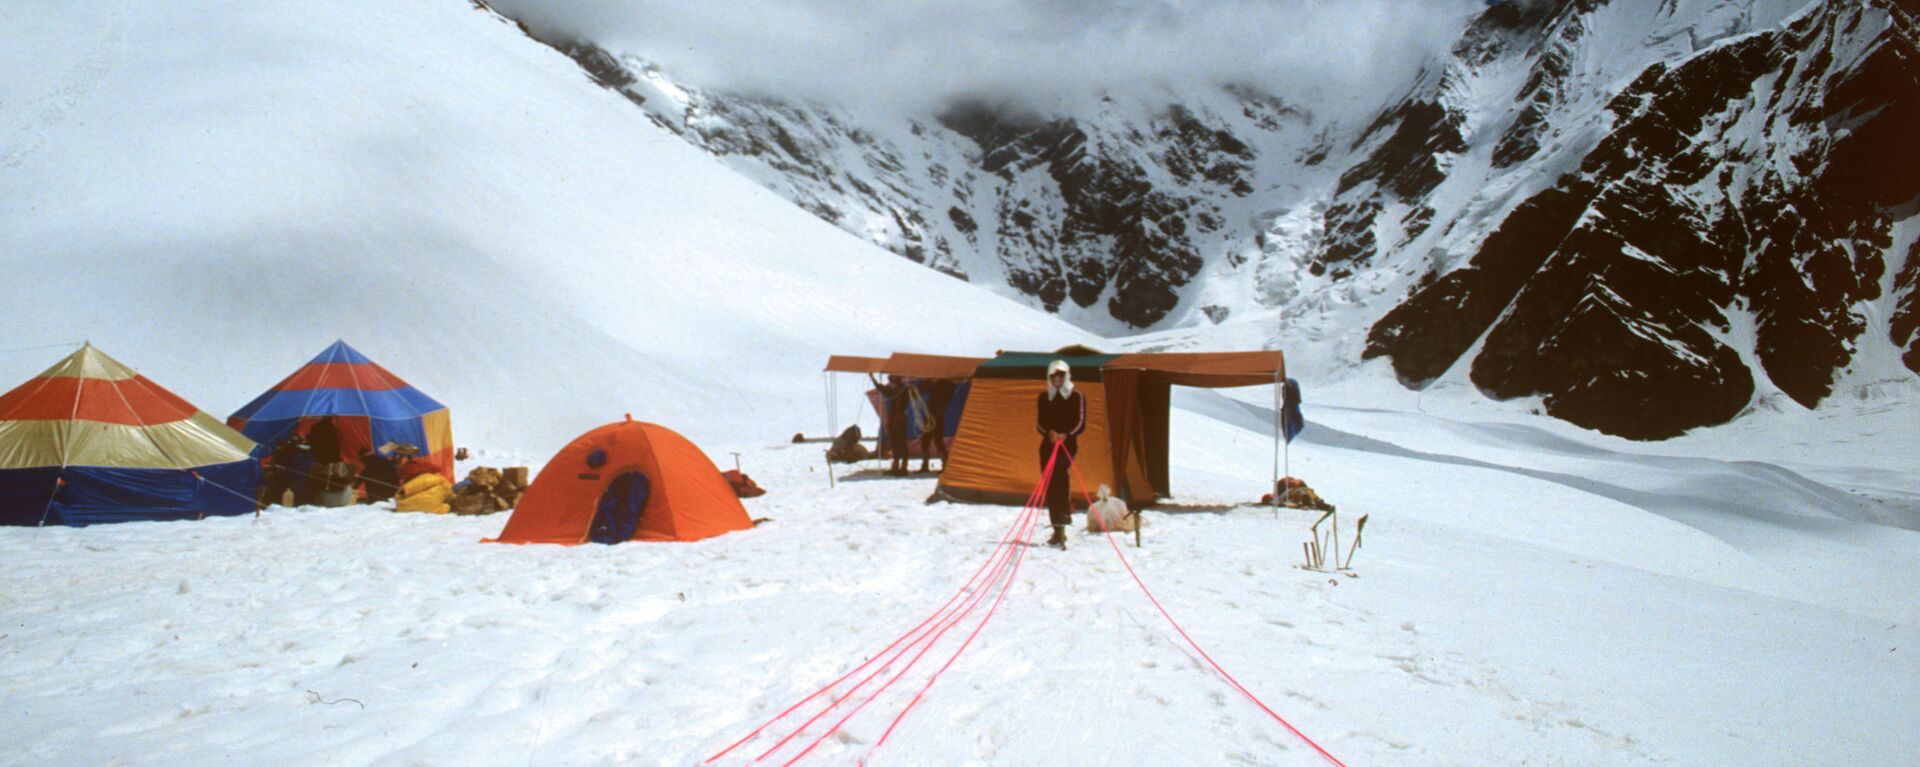 В базовом лагере альпинистов во время подготовки к восхождению на Эверест, архивное фото - Sputnik Казахстан, 1920, 19.04.2021